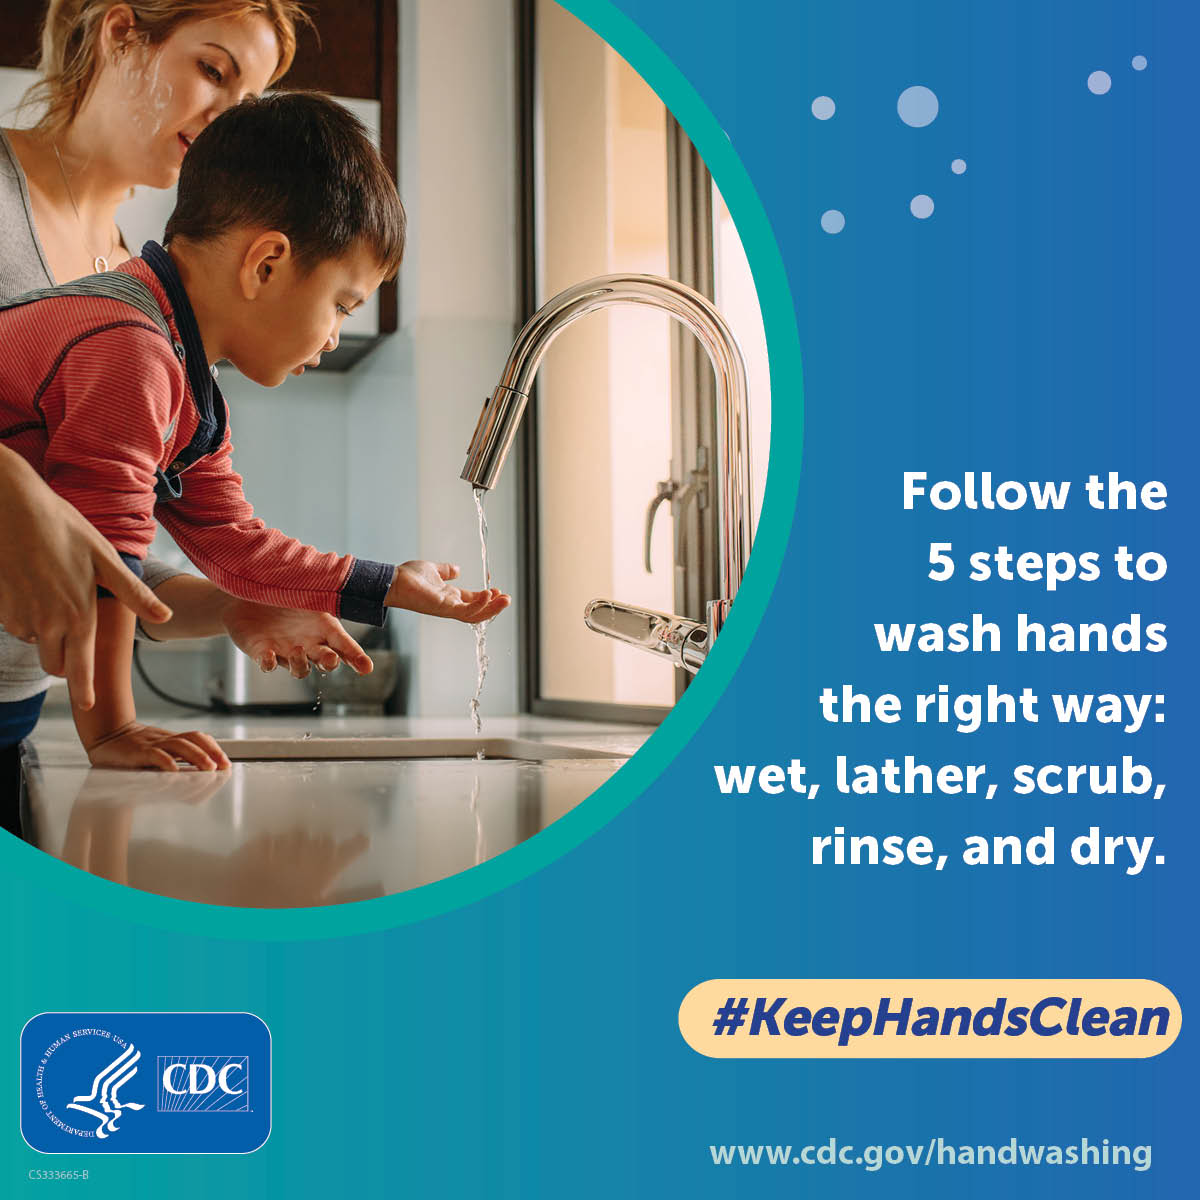 اغسل يديك في 5 خطوات.  بلل يديك ، وافركهما بالصابون ، وعبر بين الأصابع ، ثم اغسلهما جيدًا بالماء ، ثم جففهما.